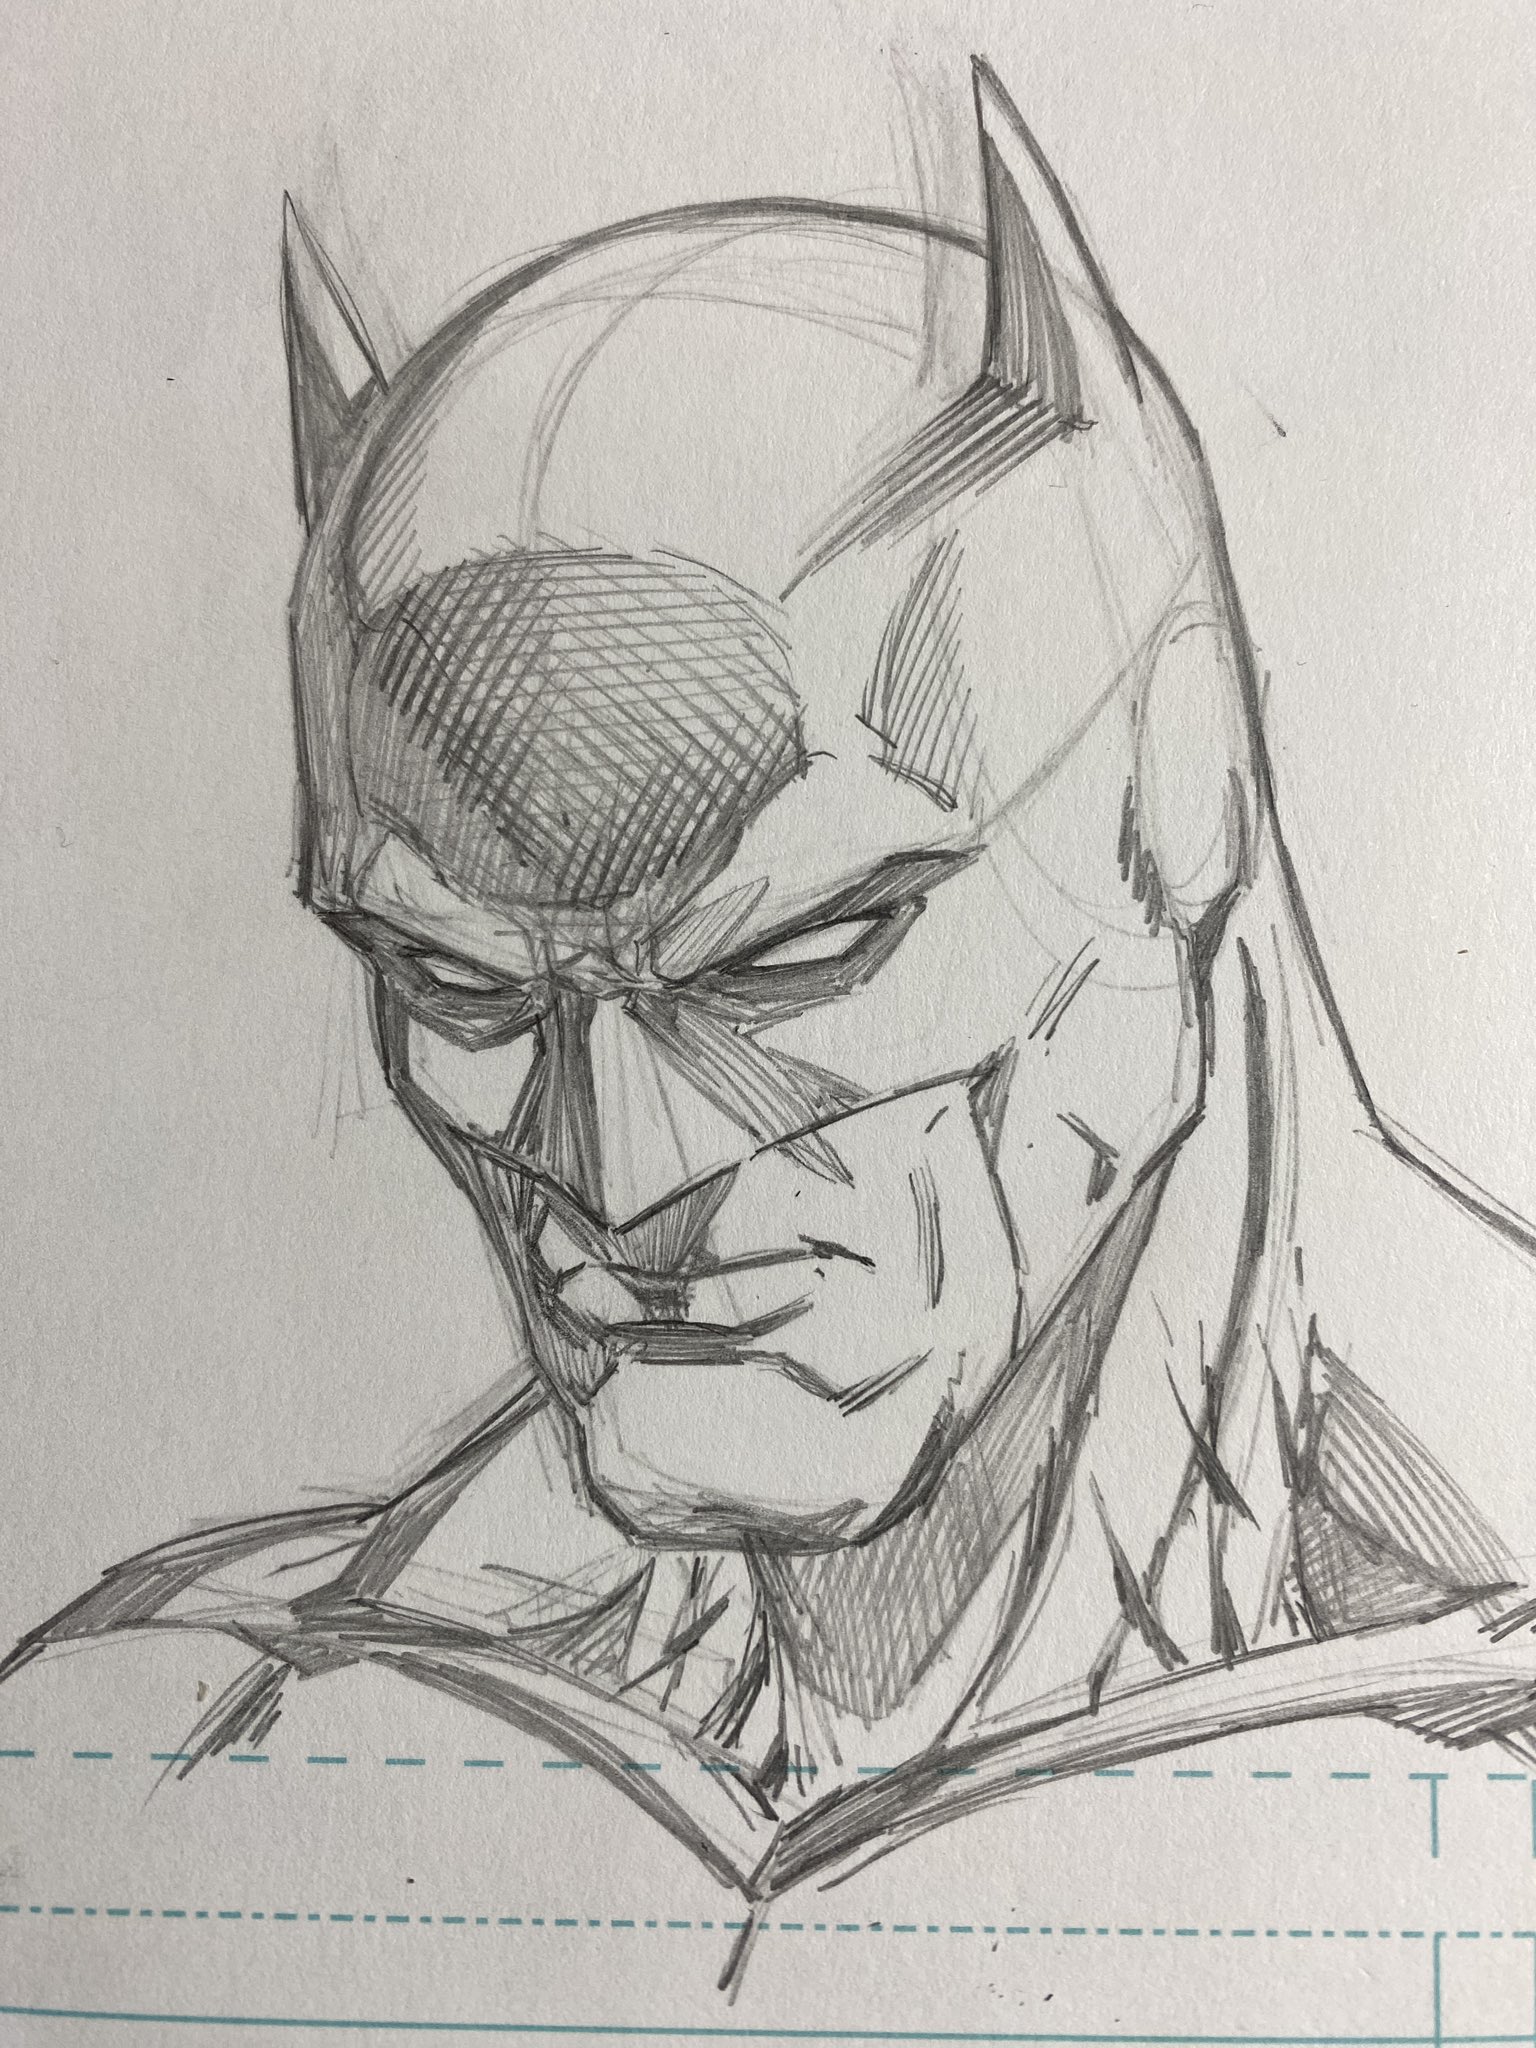 Fan Art] My quick Batman pencil sketch (BvS) : r/DCcomics